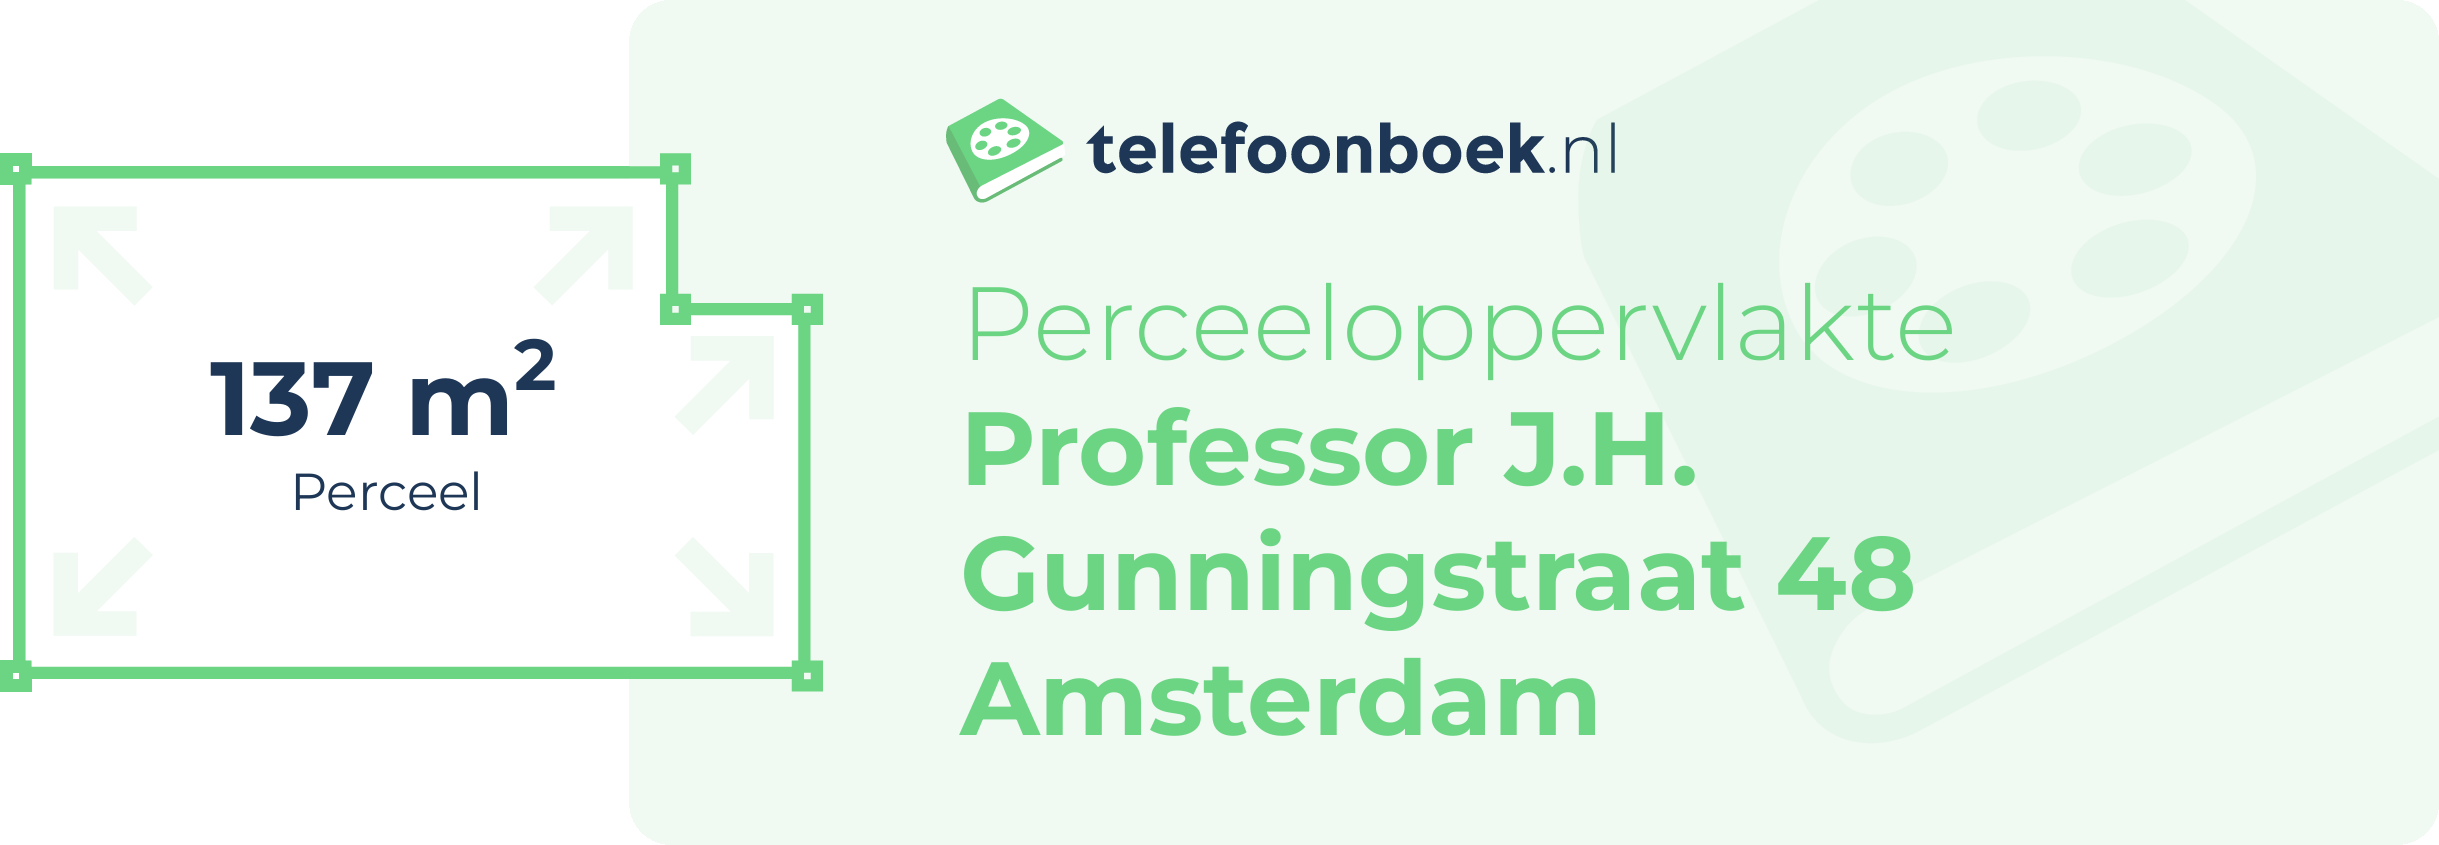 Perceeloppervlakte Professor J.H. Gunningstraat 48 Amsterdam